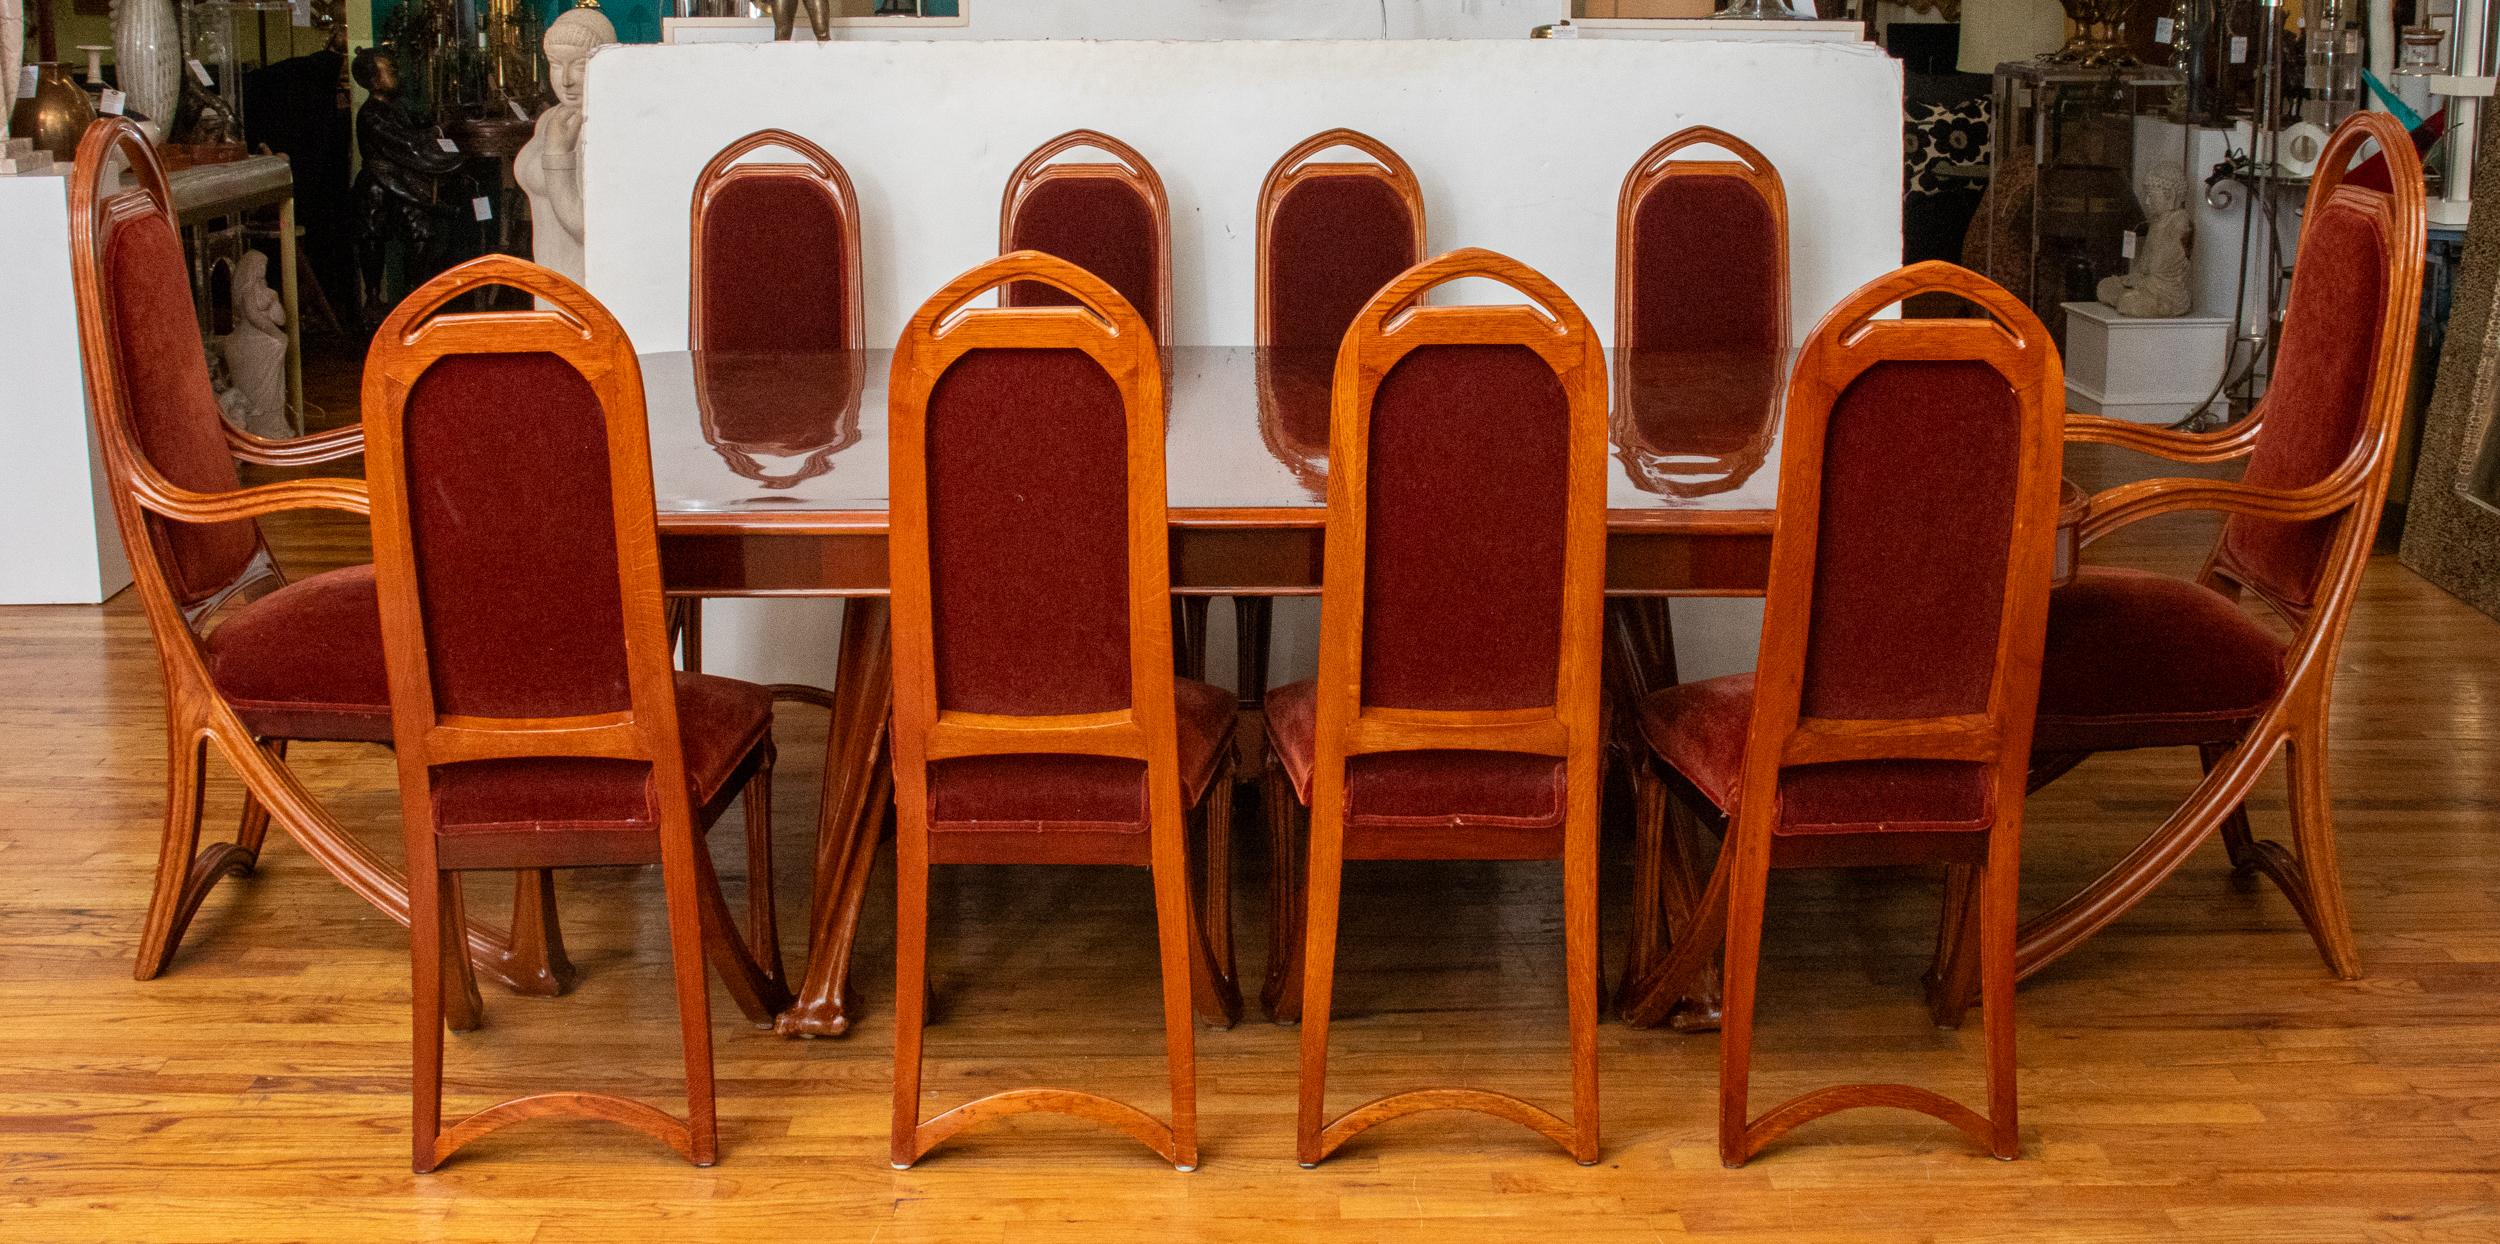 Louis Majorelle (Français, 1859-1926) Suite de salle à manger Art Nouveau en frêne et en acajou, vers 1900, comprenant deux fauteuils, huit chaises d'appoint et une table à manger avec deux rallonges modernes : Deux fauteuils, huit chaises d'appoint